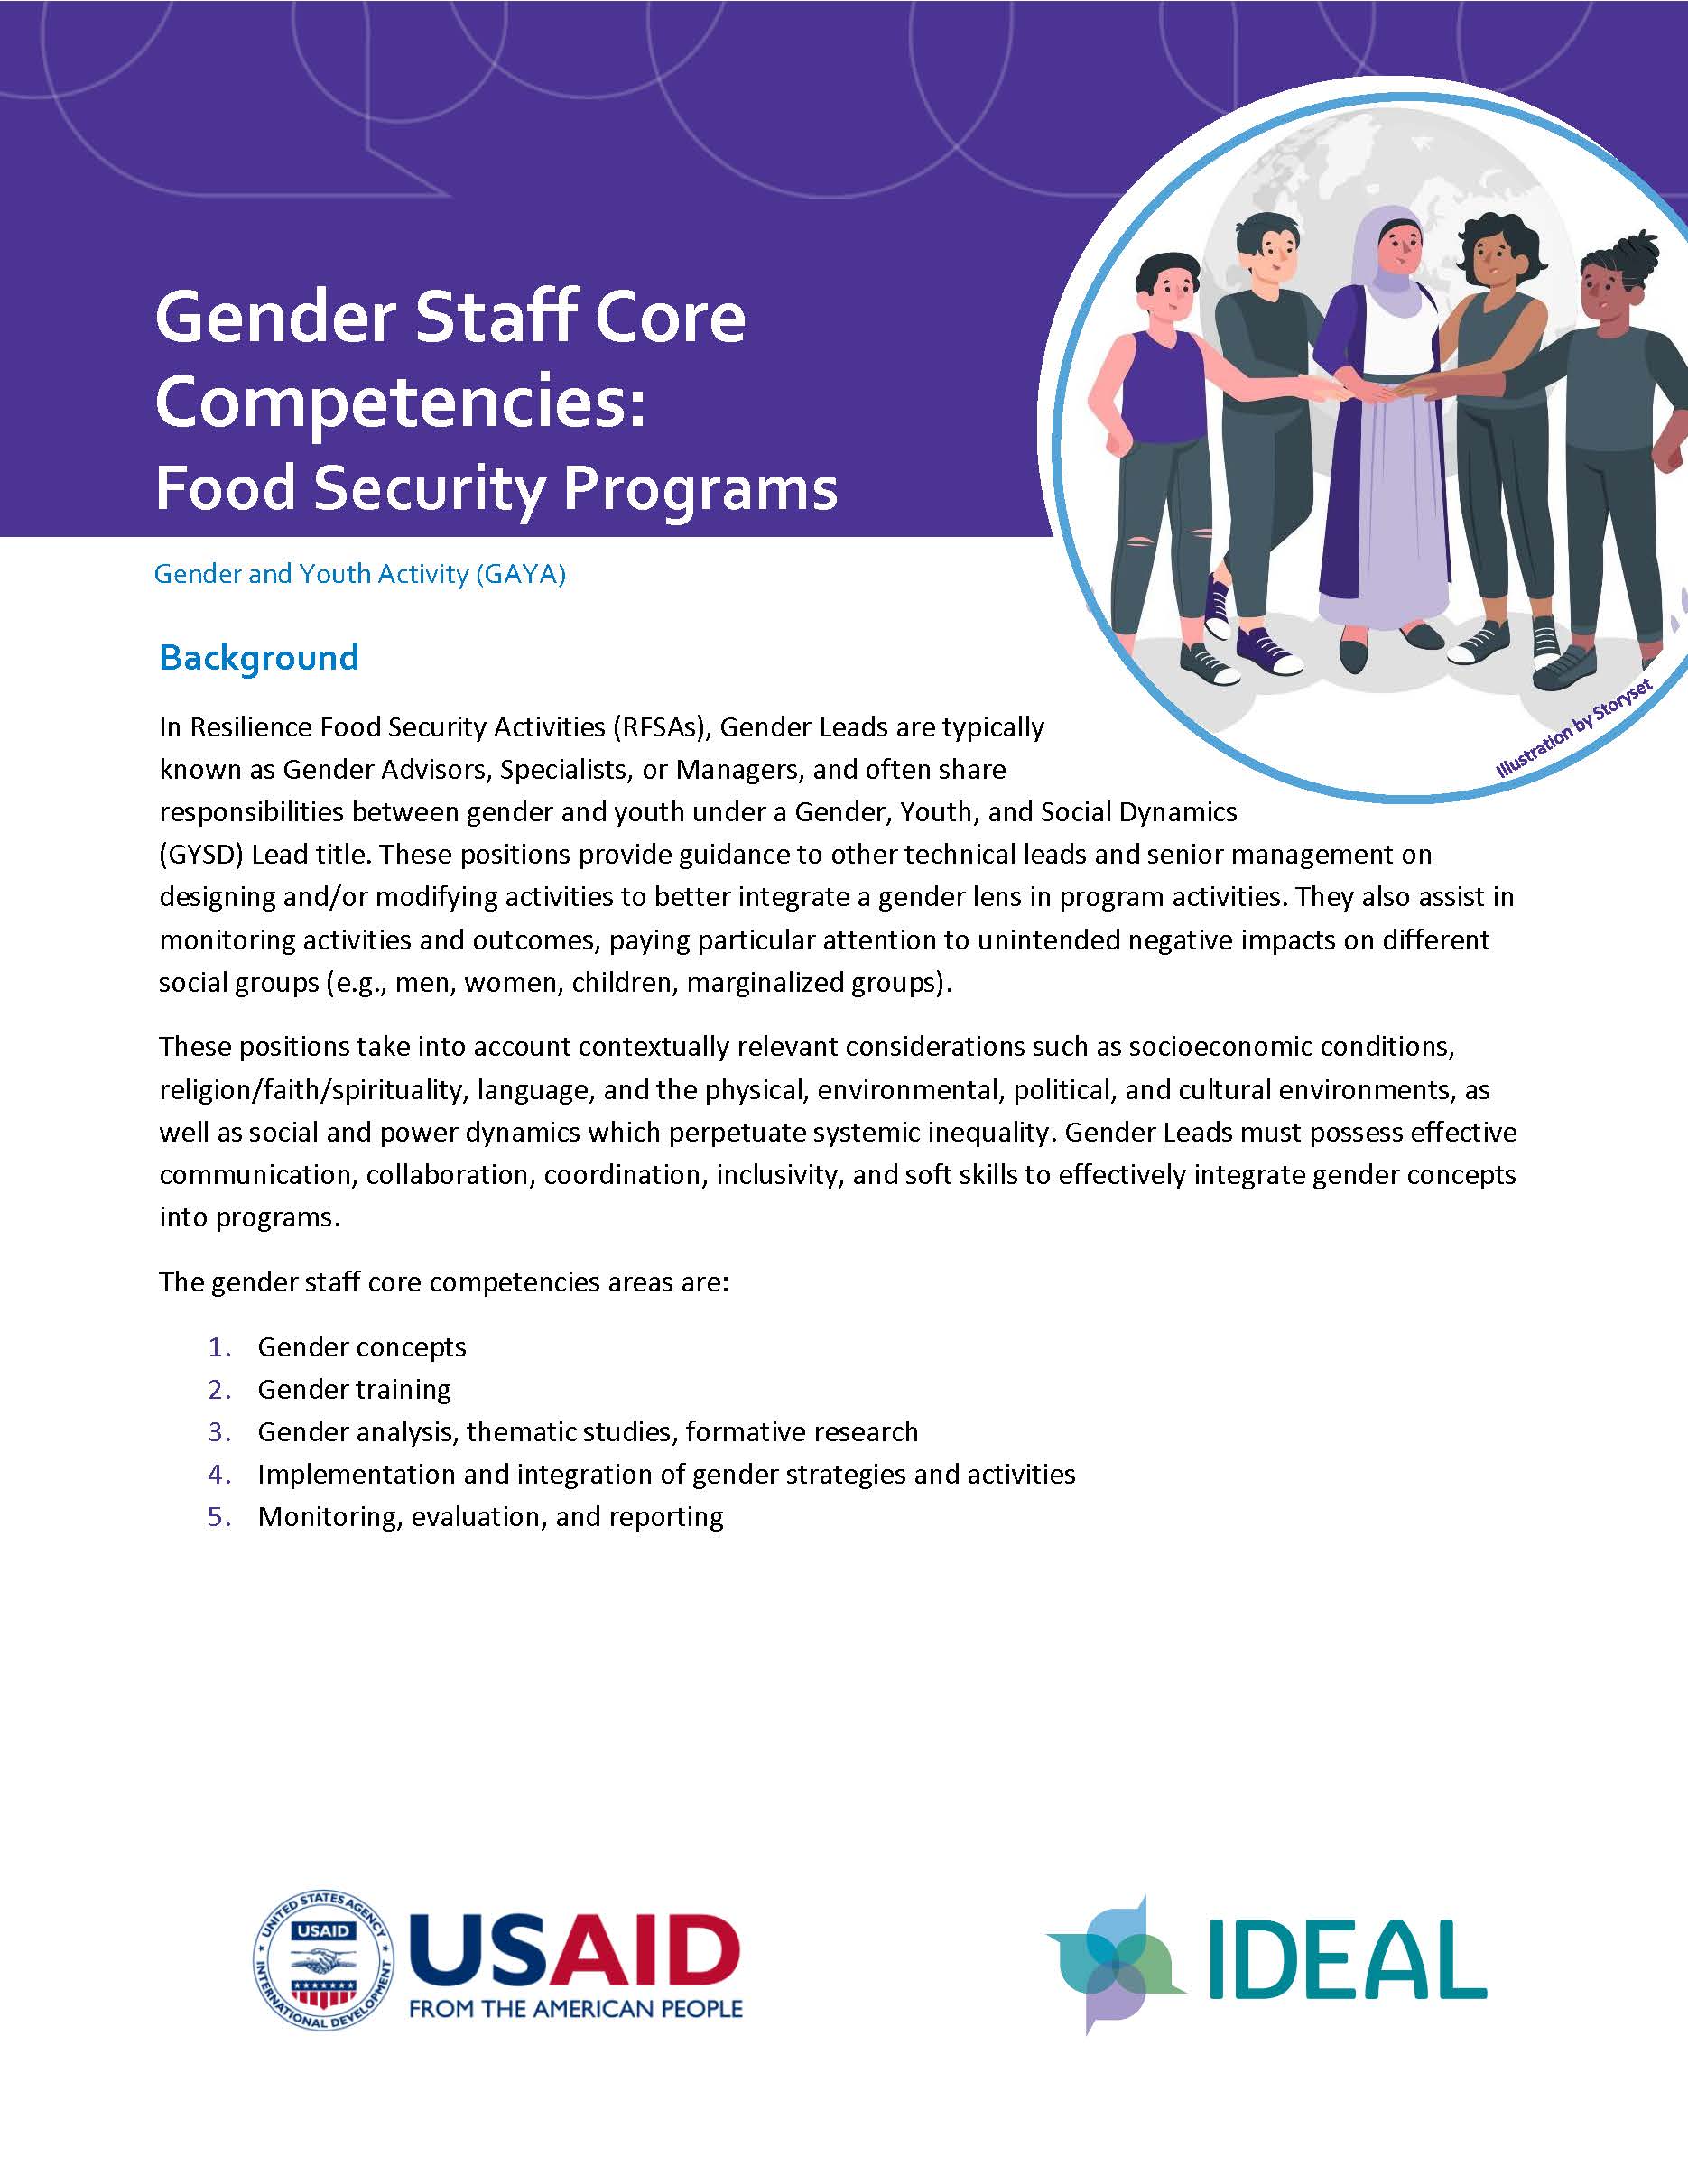 Page de couverture du rapport, intitulée « Compétences de base du personnel en matière d'égalité des sexes : programmes de sécurité alimentaire » avec un graphique représentant cinq personnes debout devant un globe. L'autre texte de la page n'est pas visible.